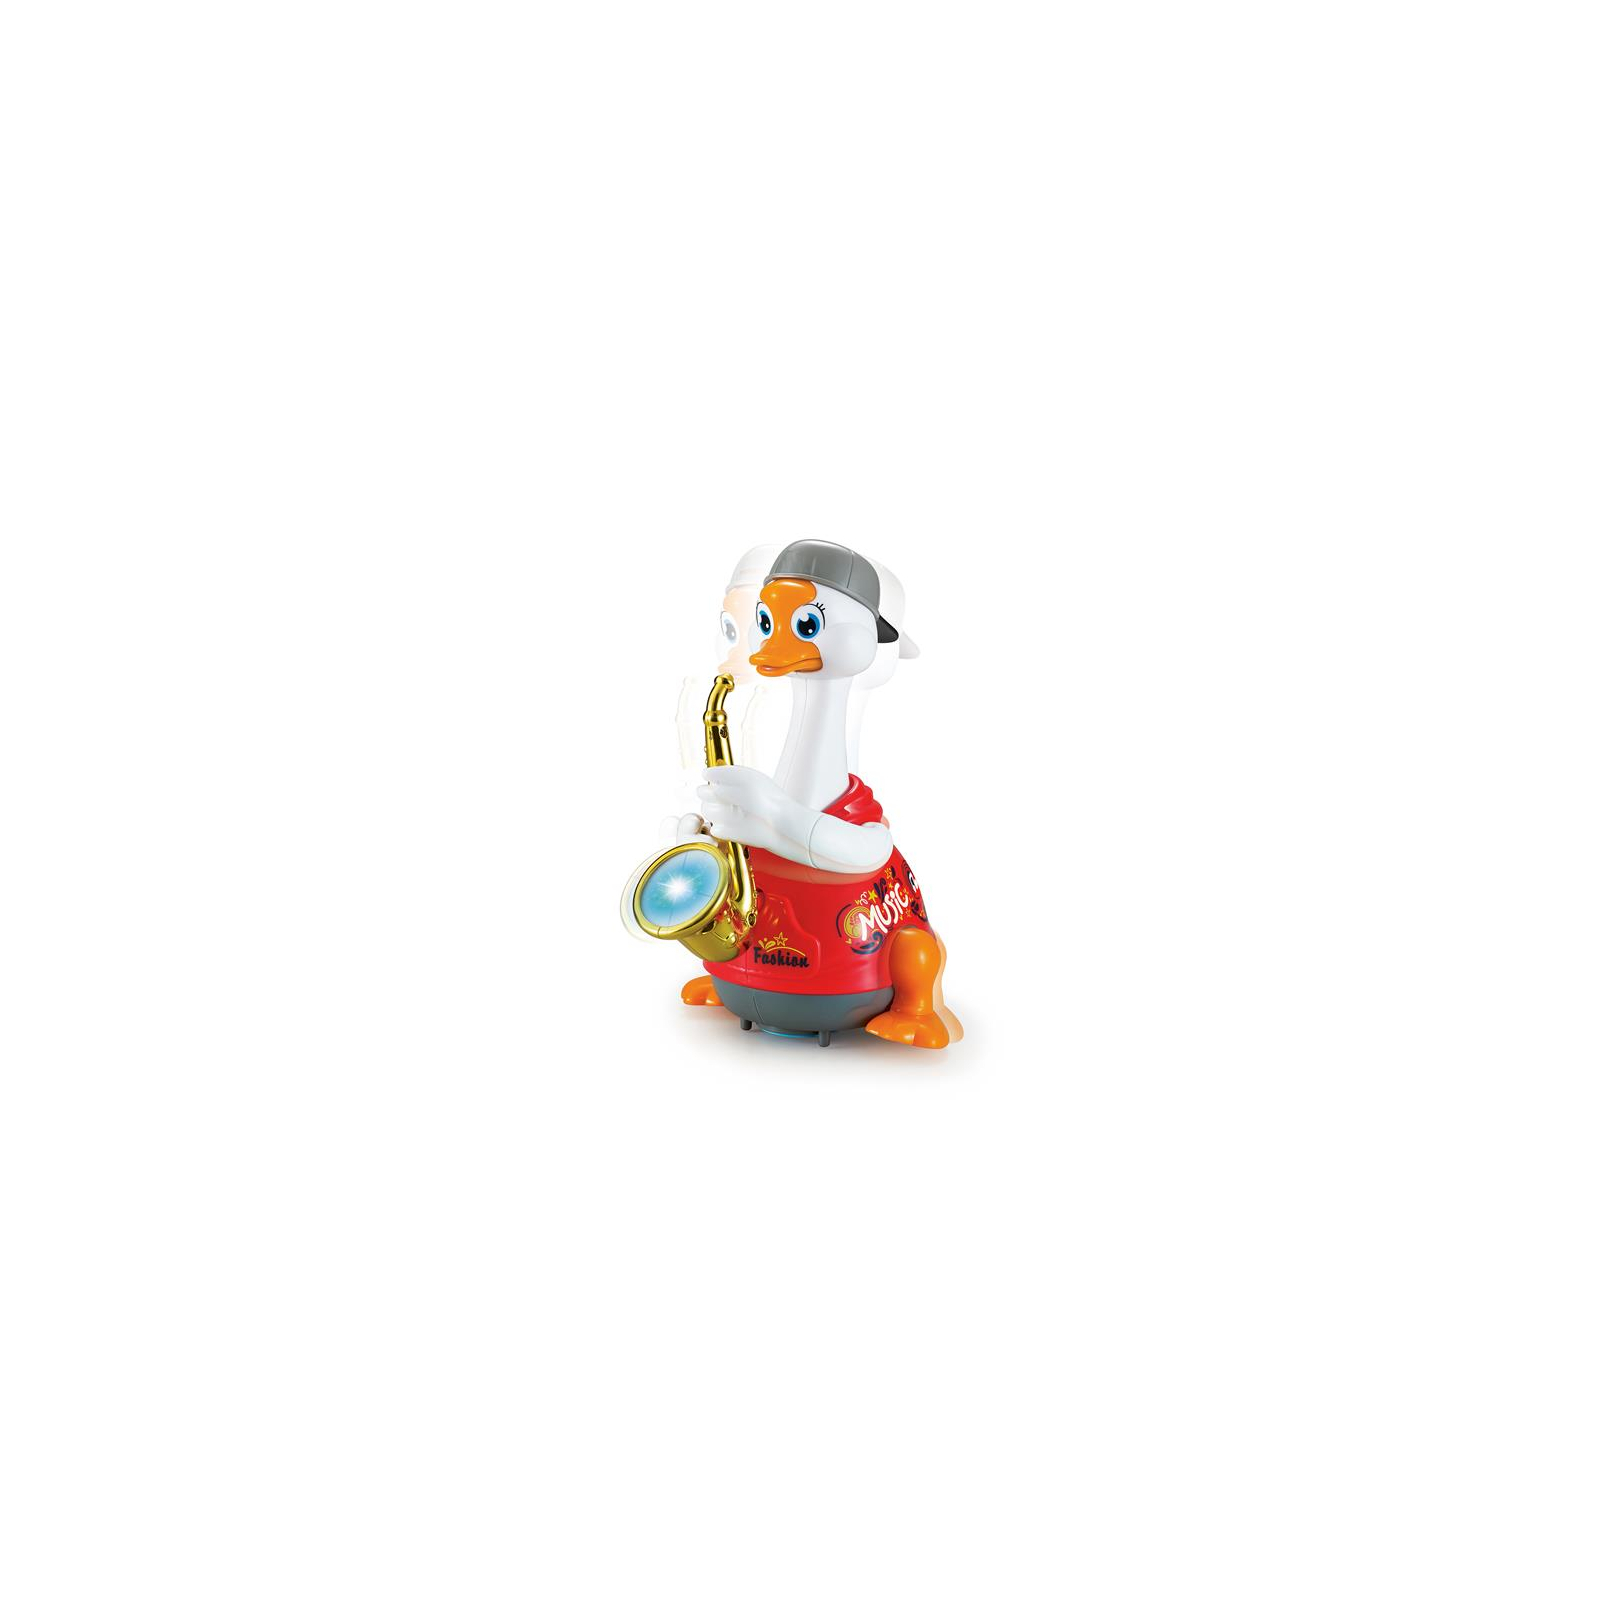 Развивающая игрушка Hola Toys Гусь-саксофонист, красный (6111-red) изображение 2